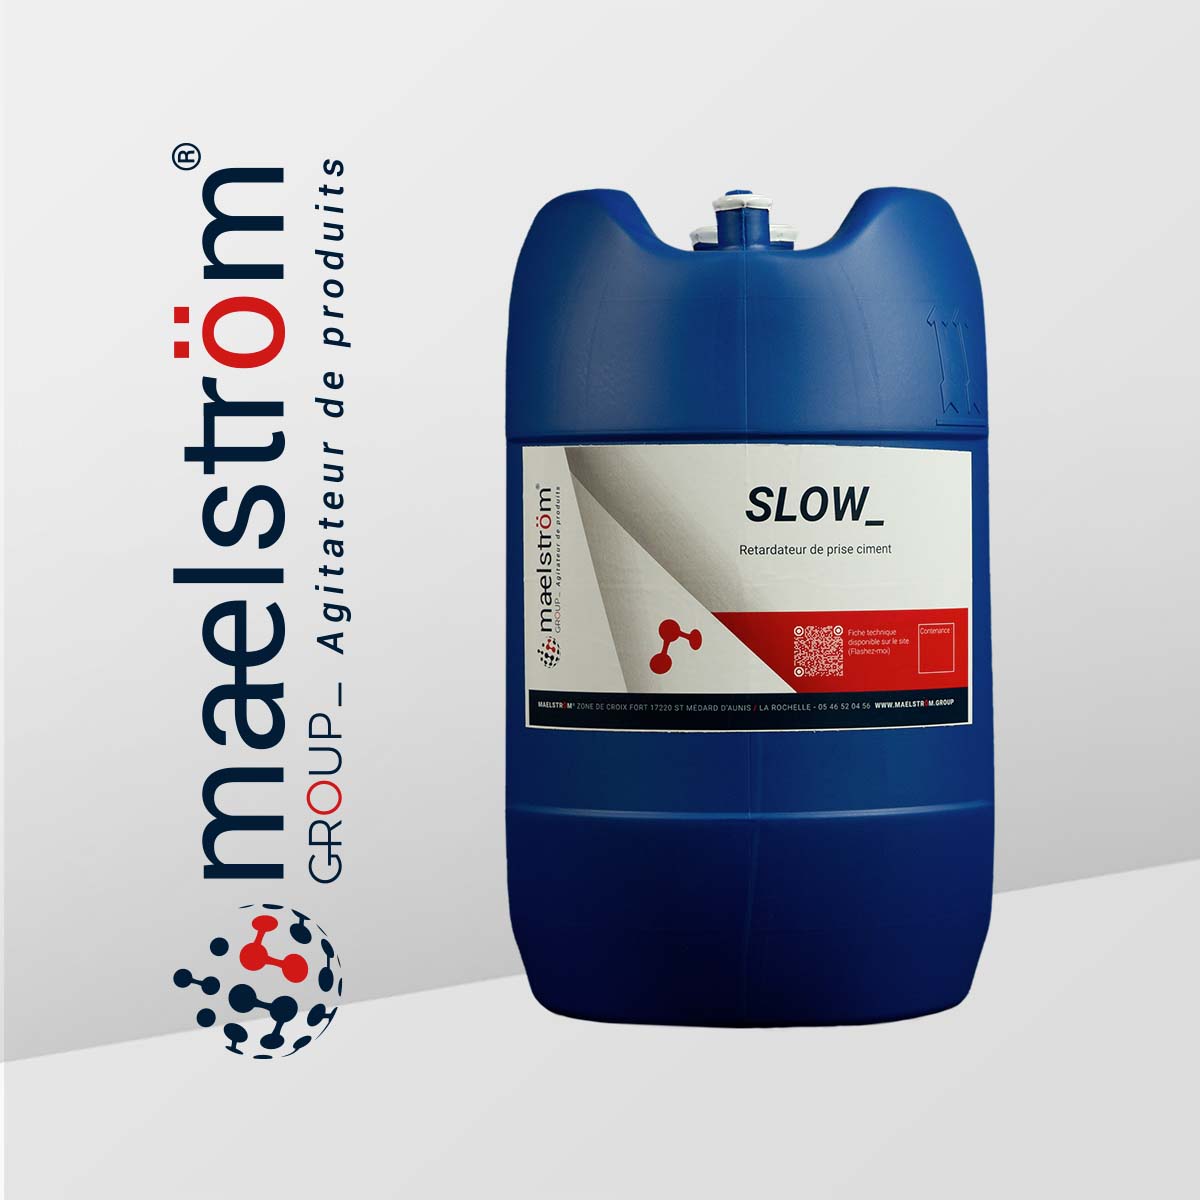 SLOW_ est un retardateur de prise spécialement développé pour le ciment